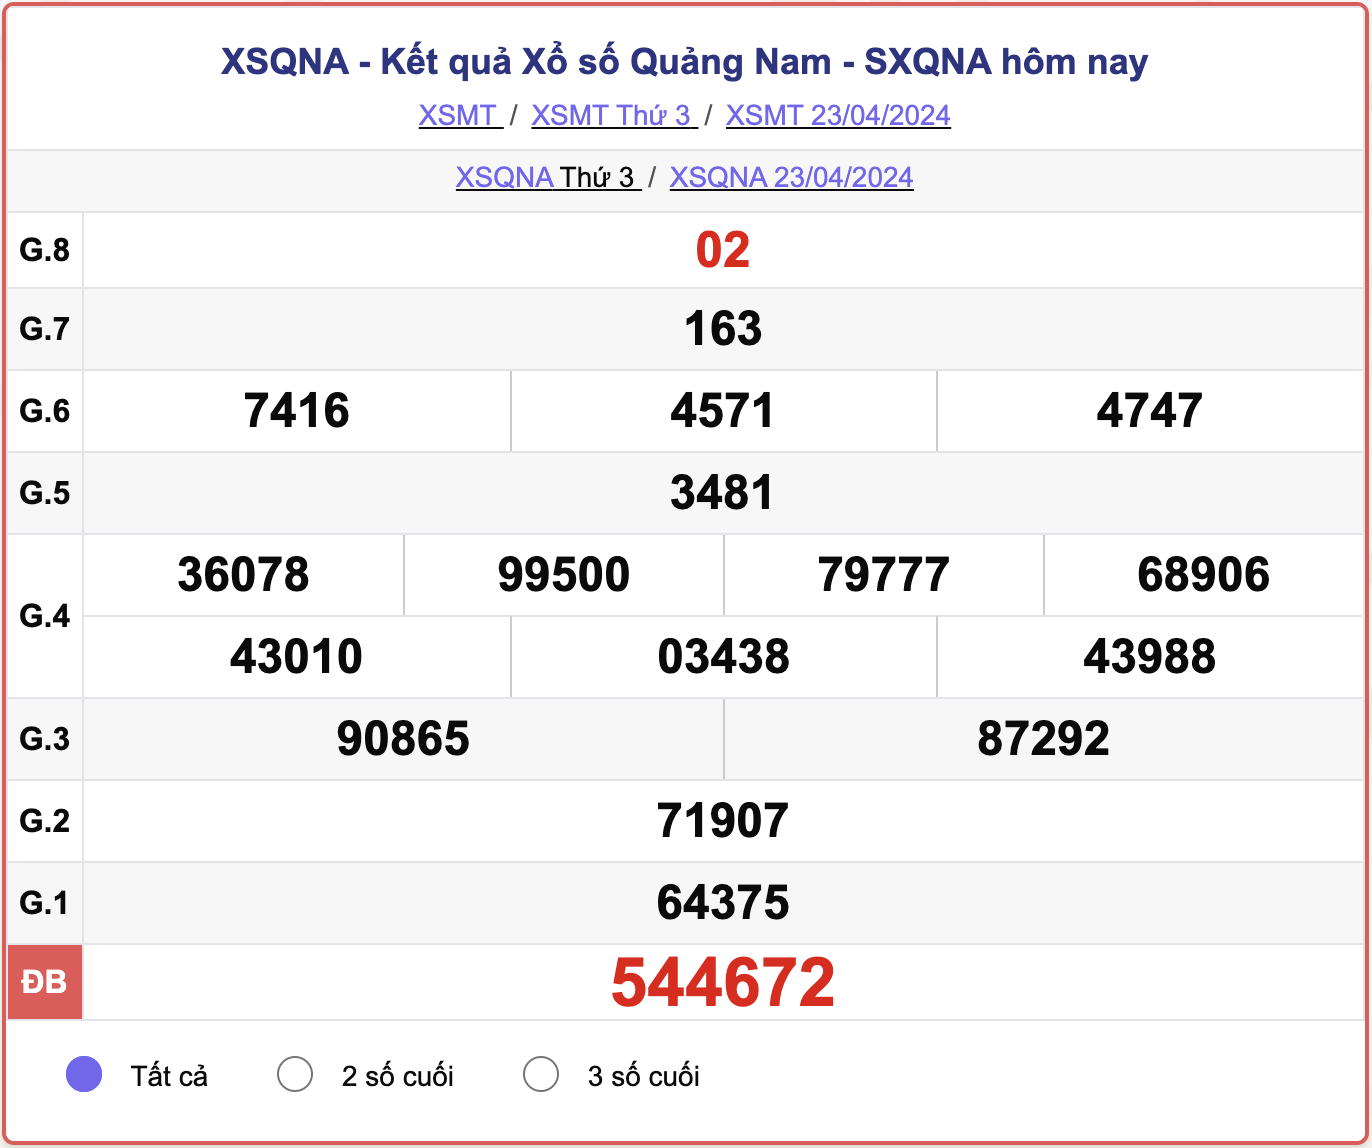 XSQNA thứ 3, kết quả xổ số Quảng Nam ngày 23/4/2024.